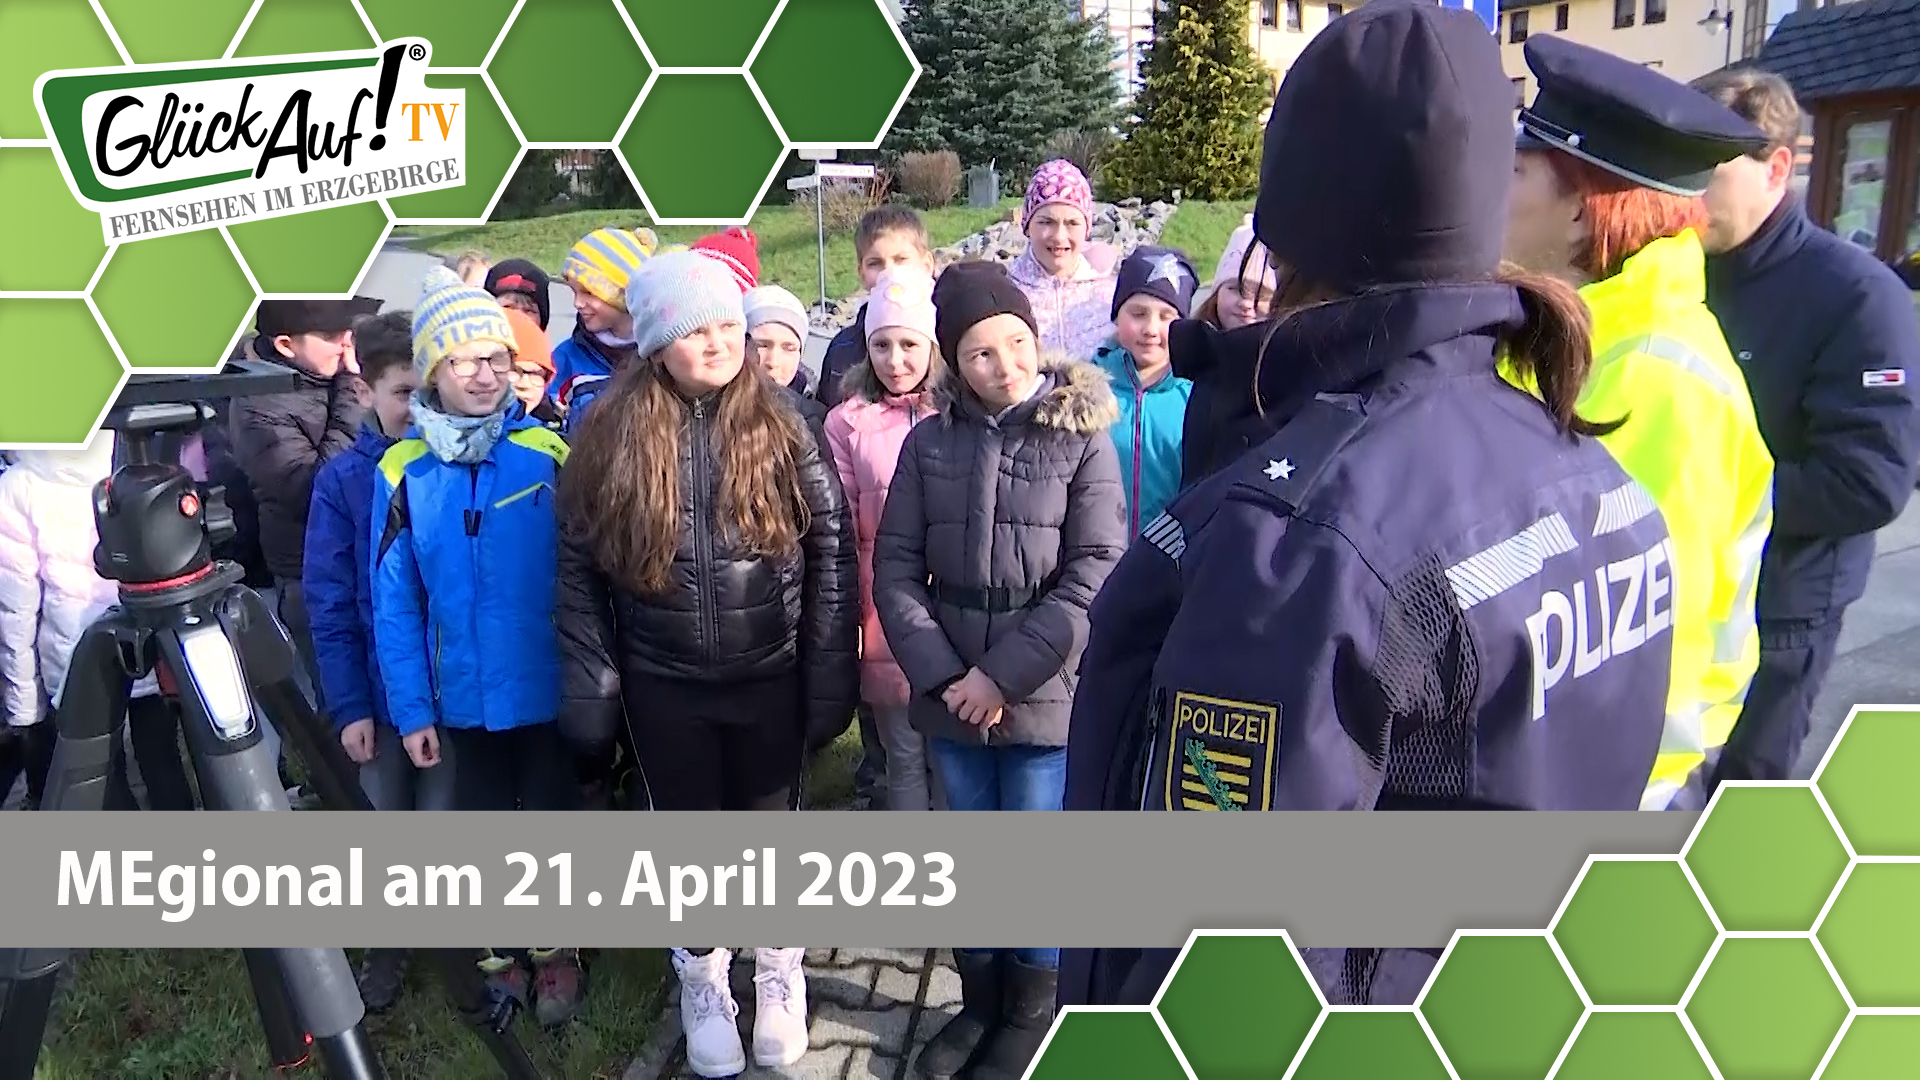 MEgional am 21. April 2023 u.a. mit Blitz for Kids in Marienberg